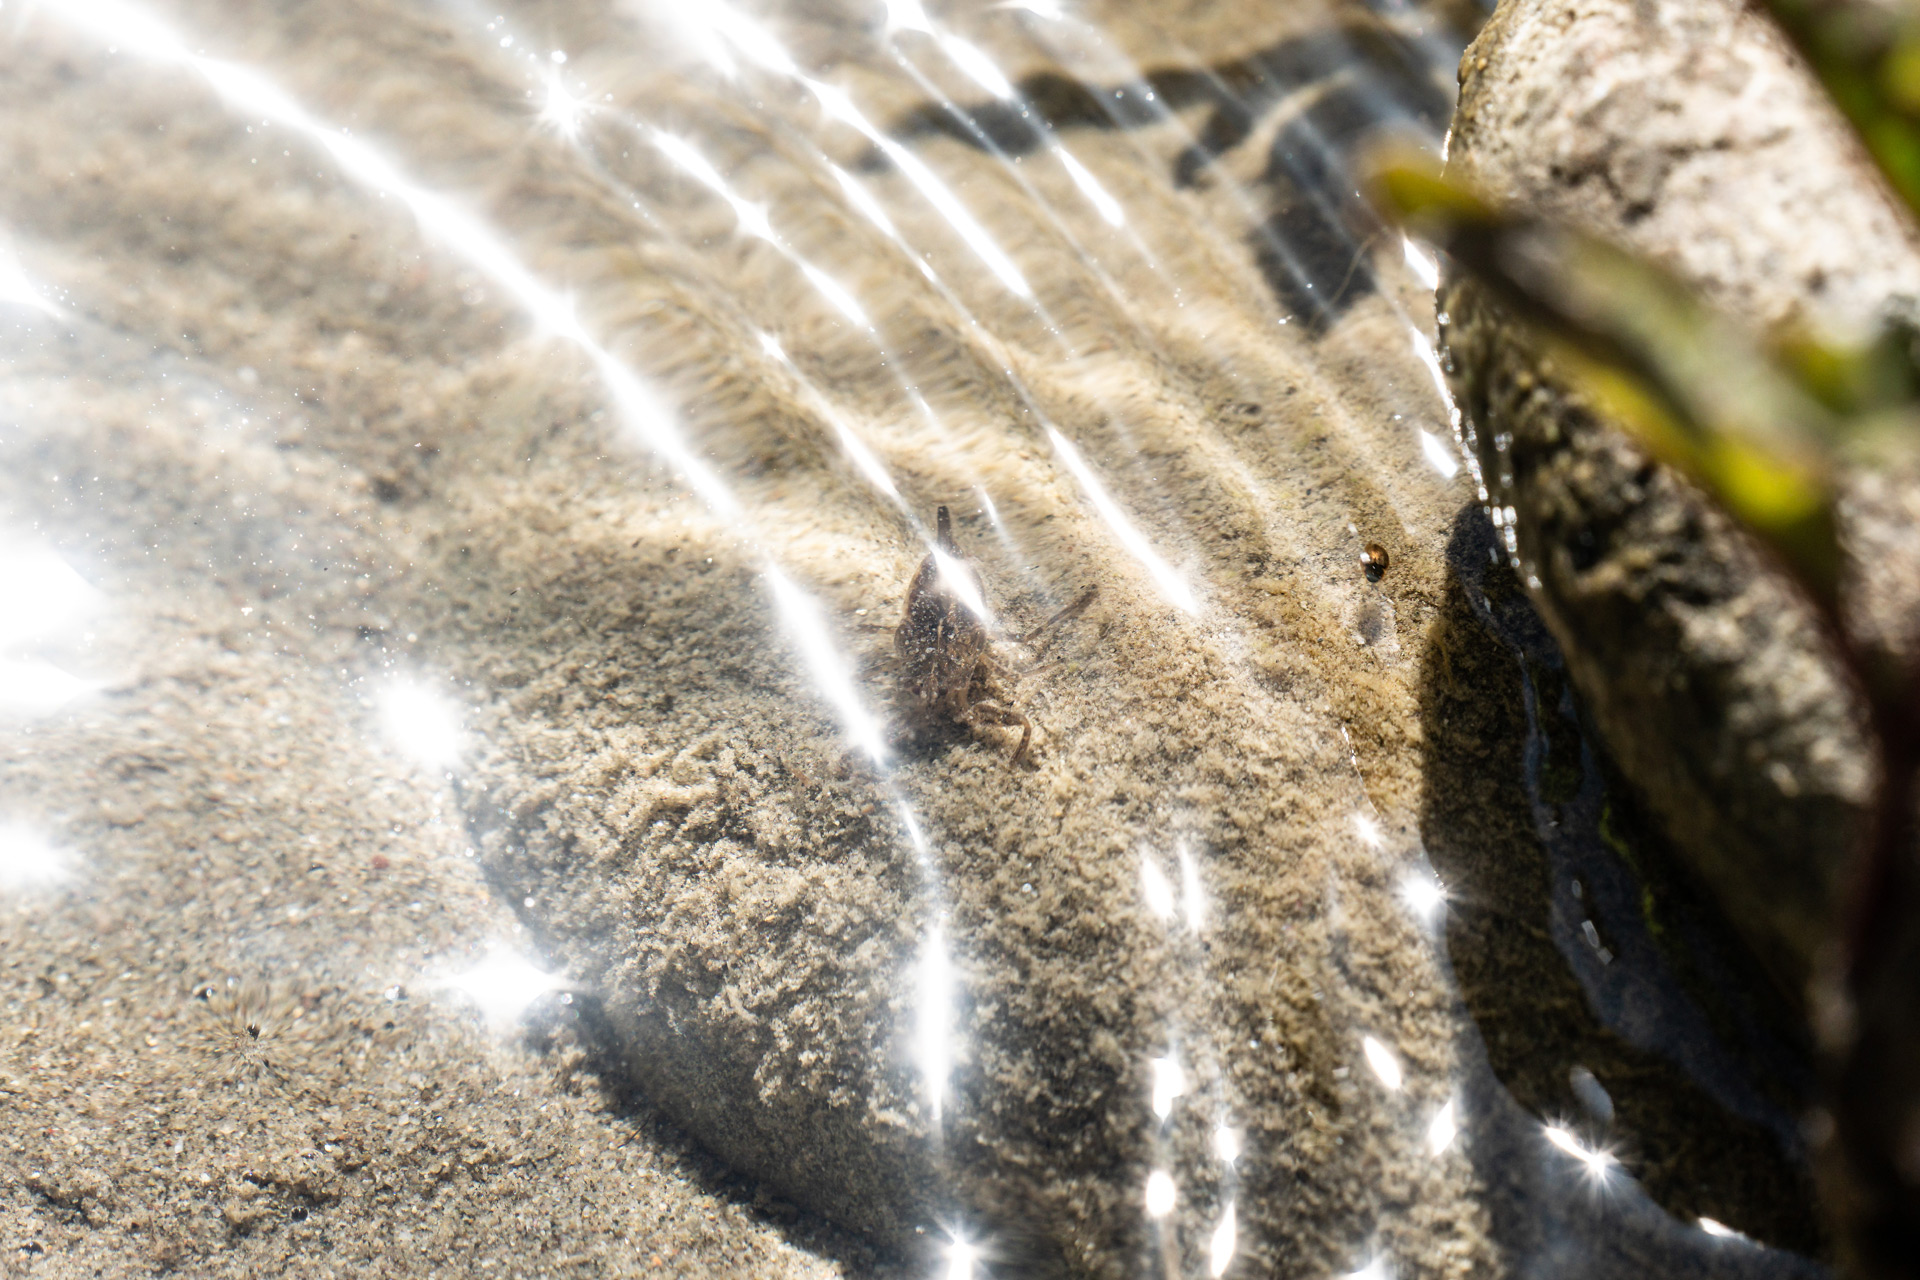 Wassertier auf sandigem Grund in seichtem klarem Wasser mit Lichtreflexionen an der Wasseroberfläche